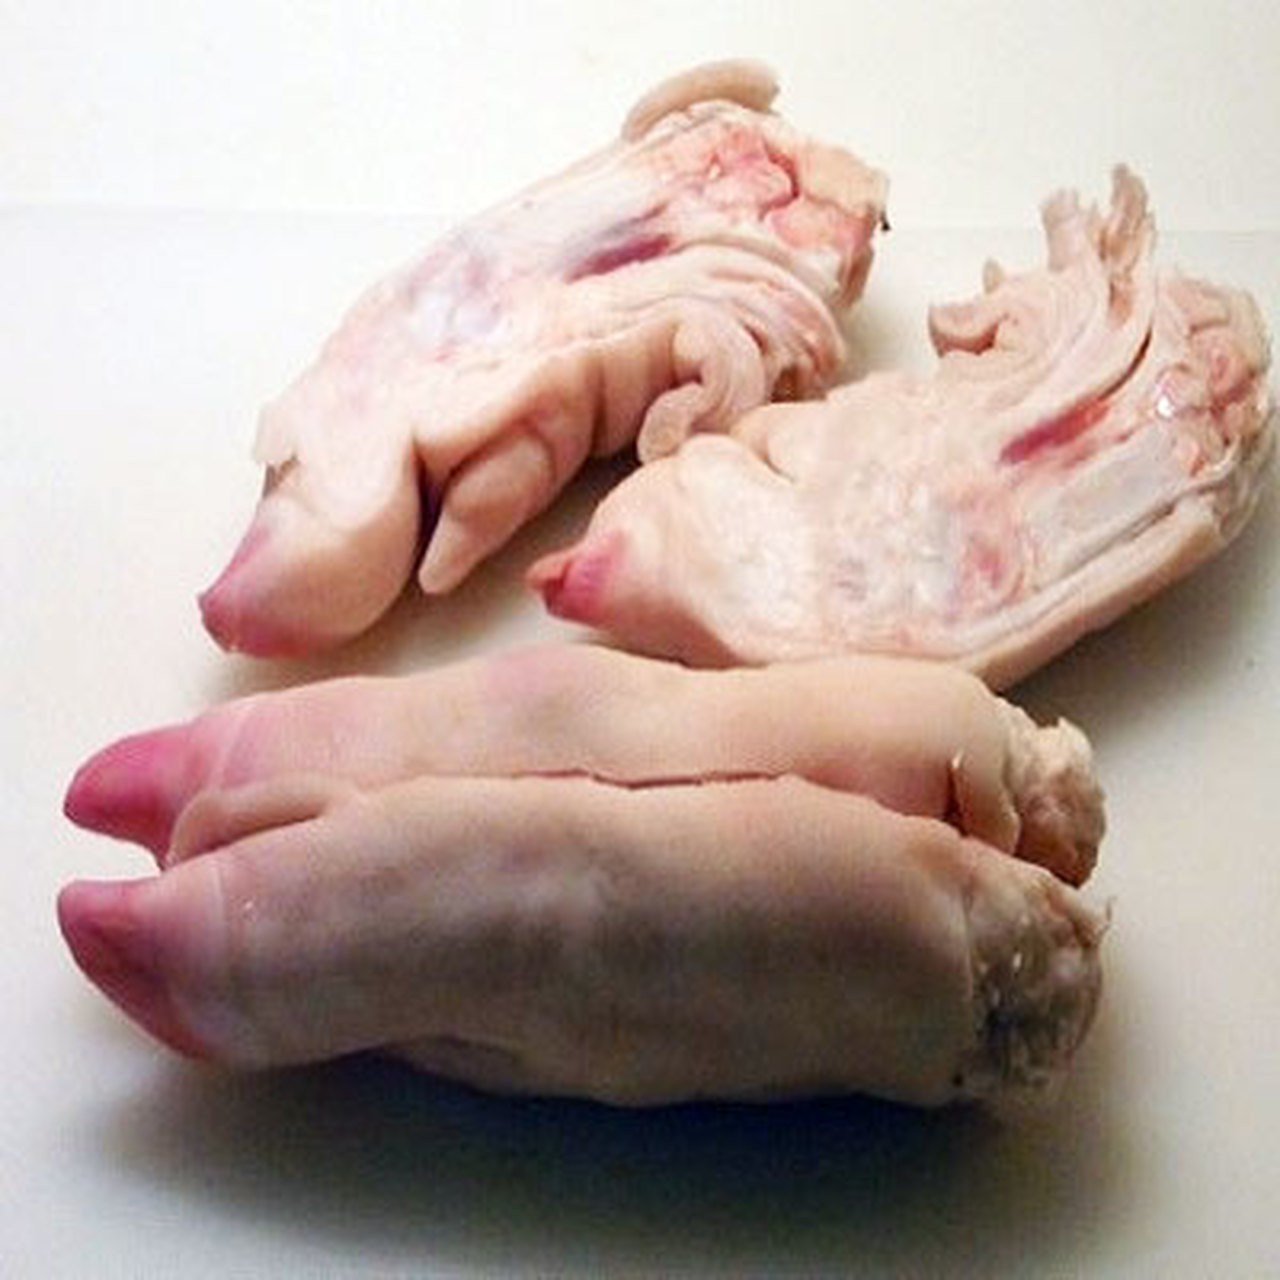 Pork legs